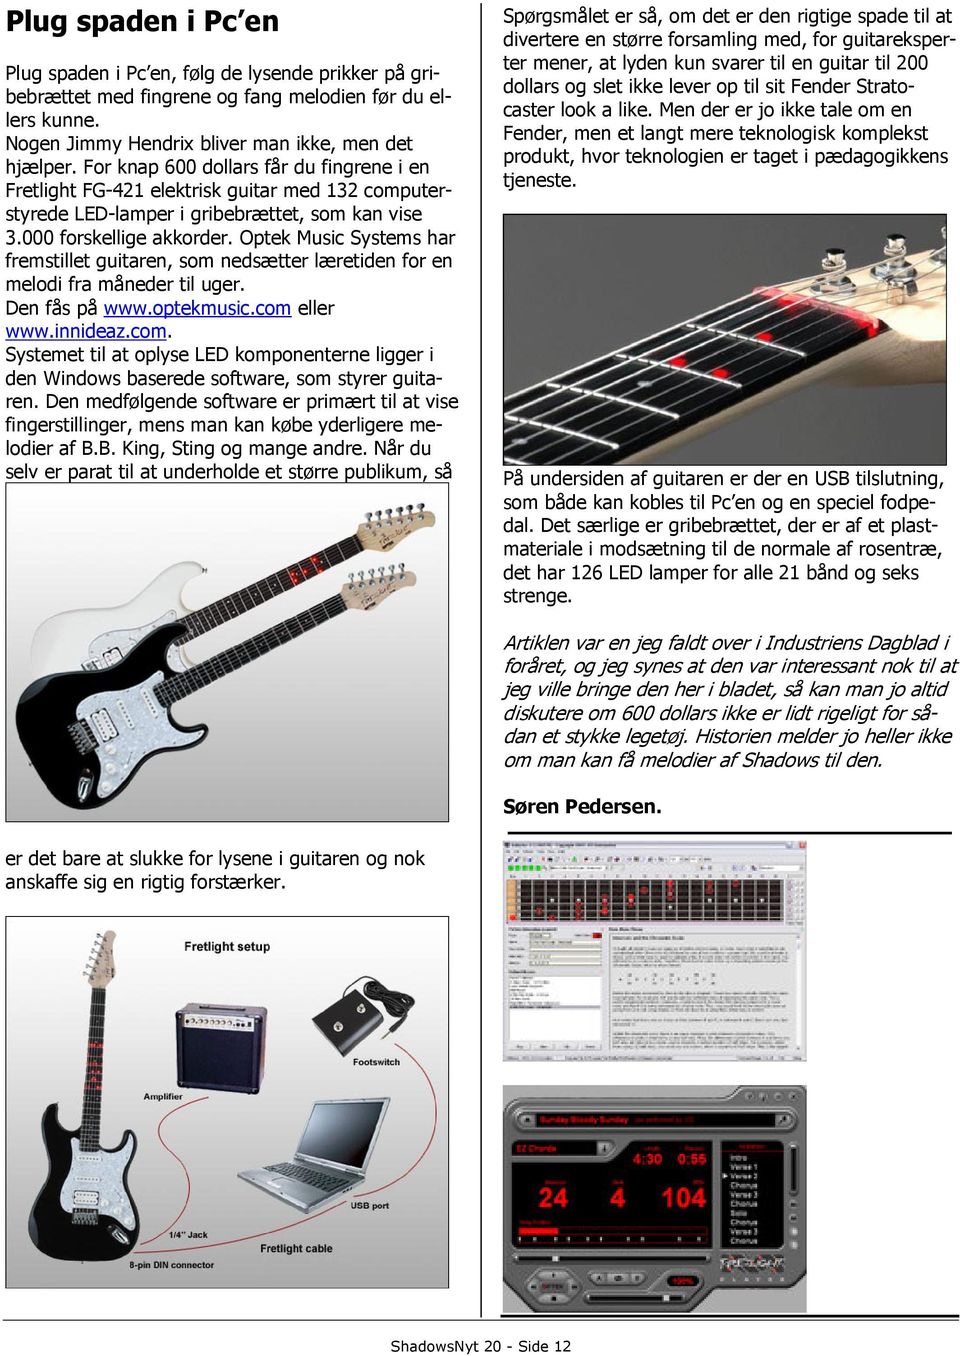 Optek Music Systems har fremstillet guitaren, som nedsætter læretiden for en melodi fra måneder til uger. Den fås på www.optekmusic.com 